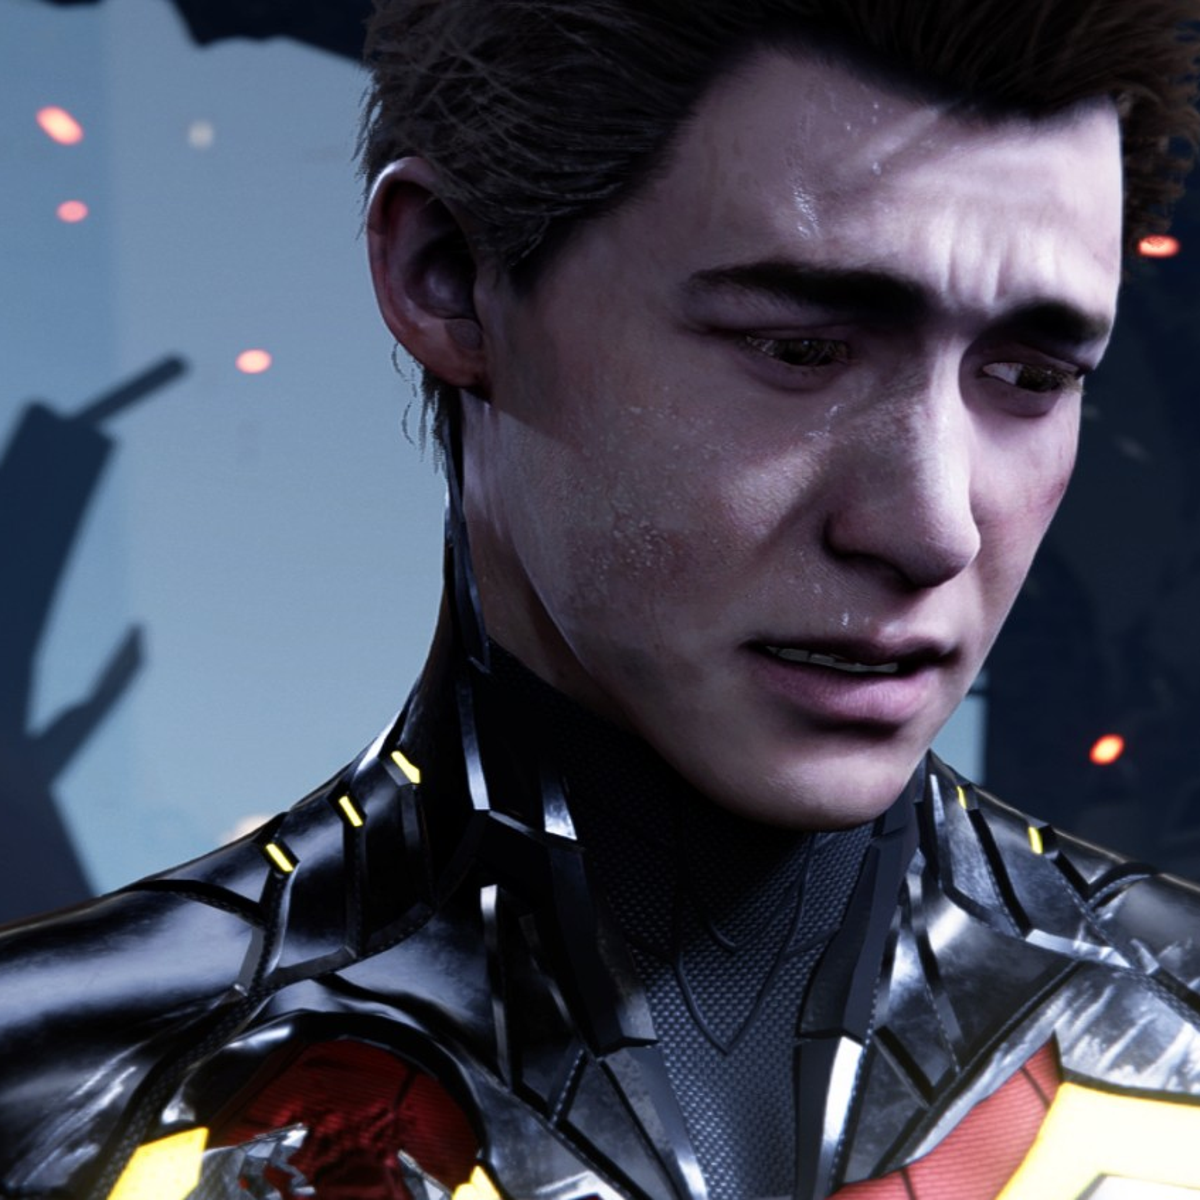 Spider-Man PC mod brings back Peter Parker's original face | Eurogamer.net